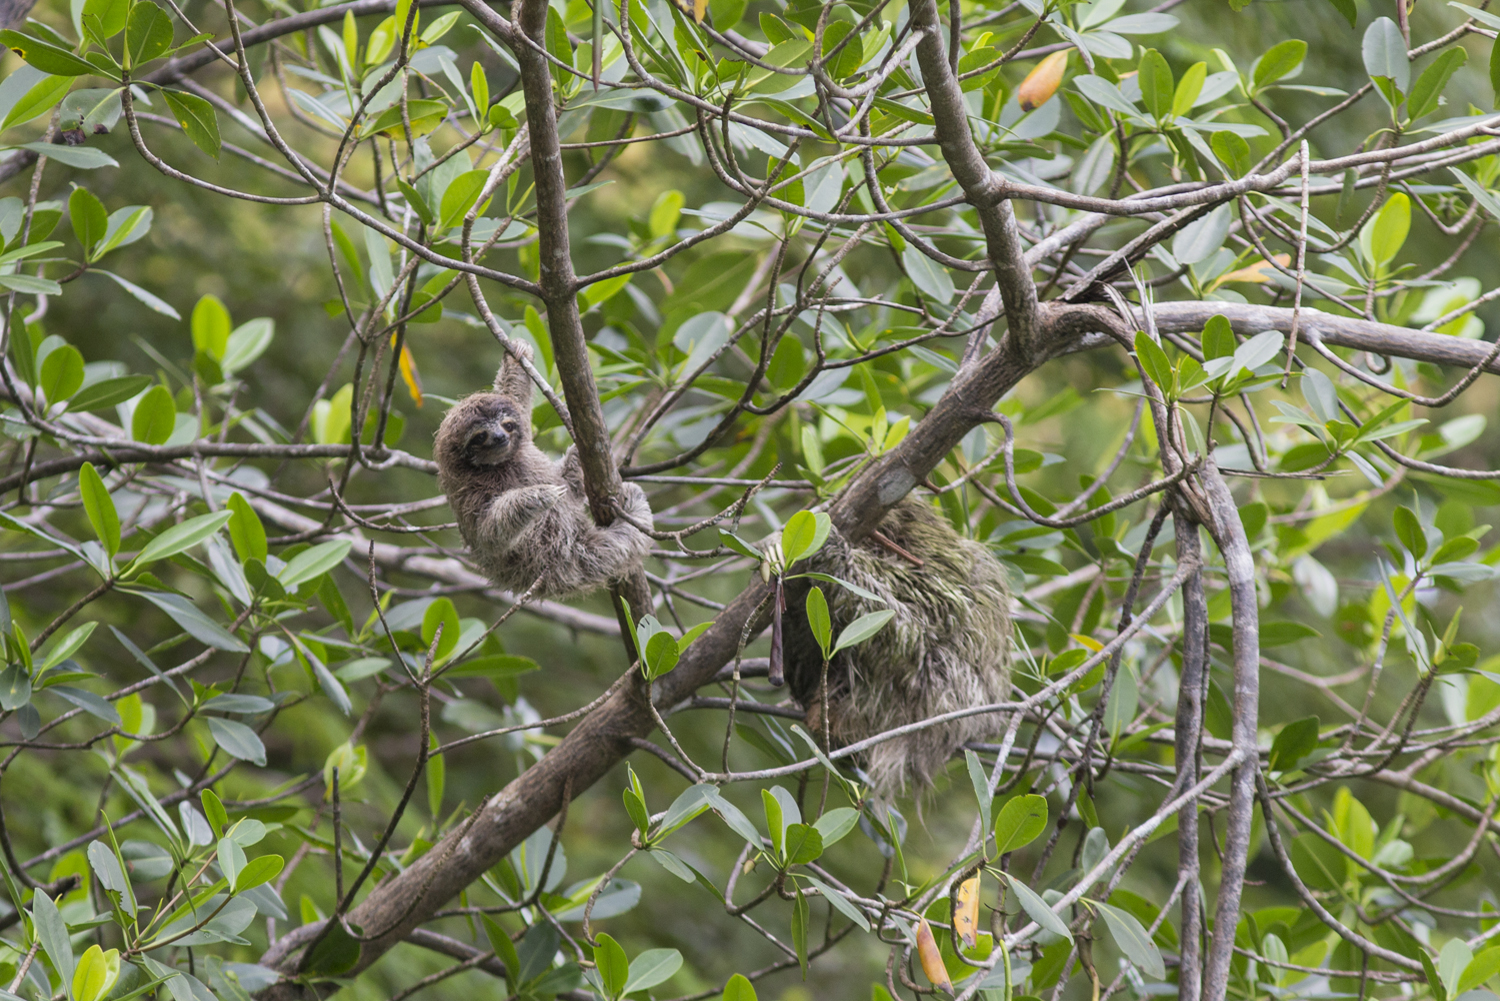 baby pygmy sloth